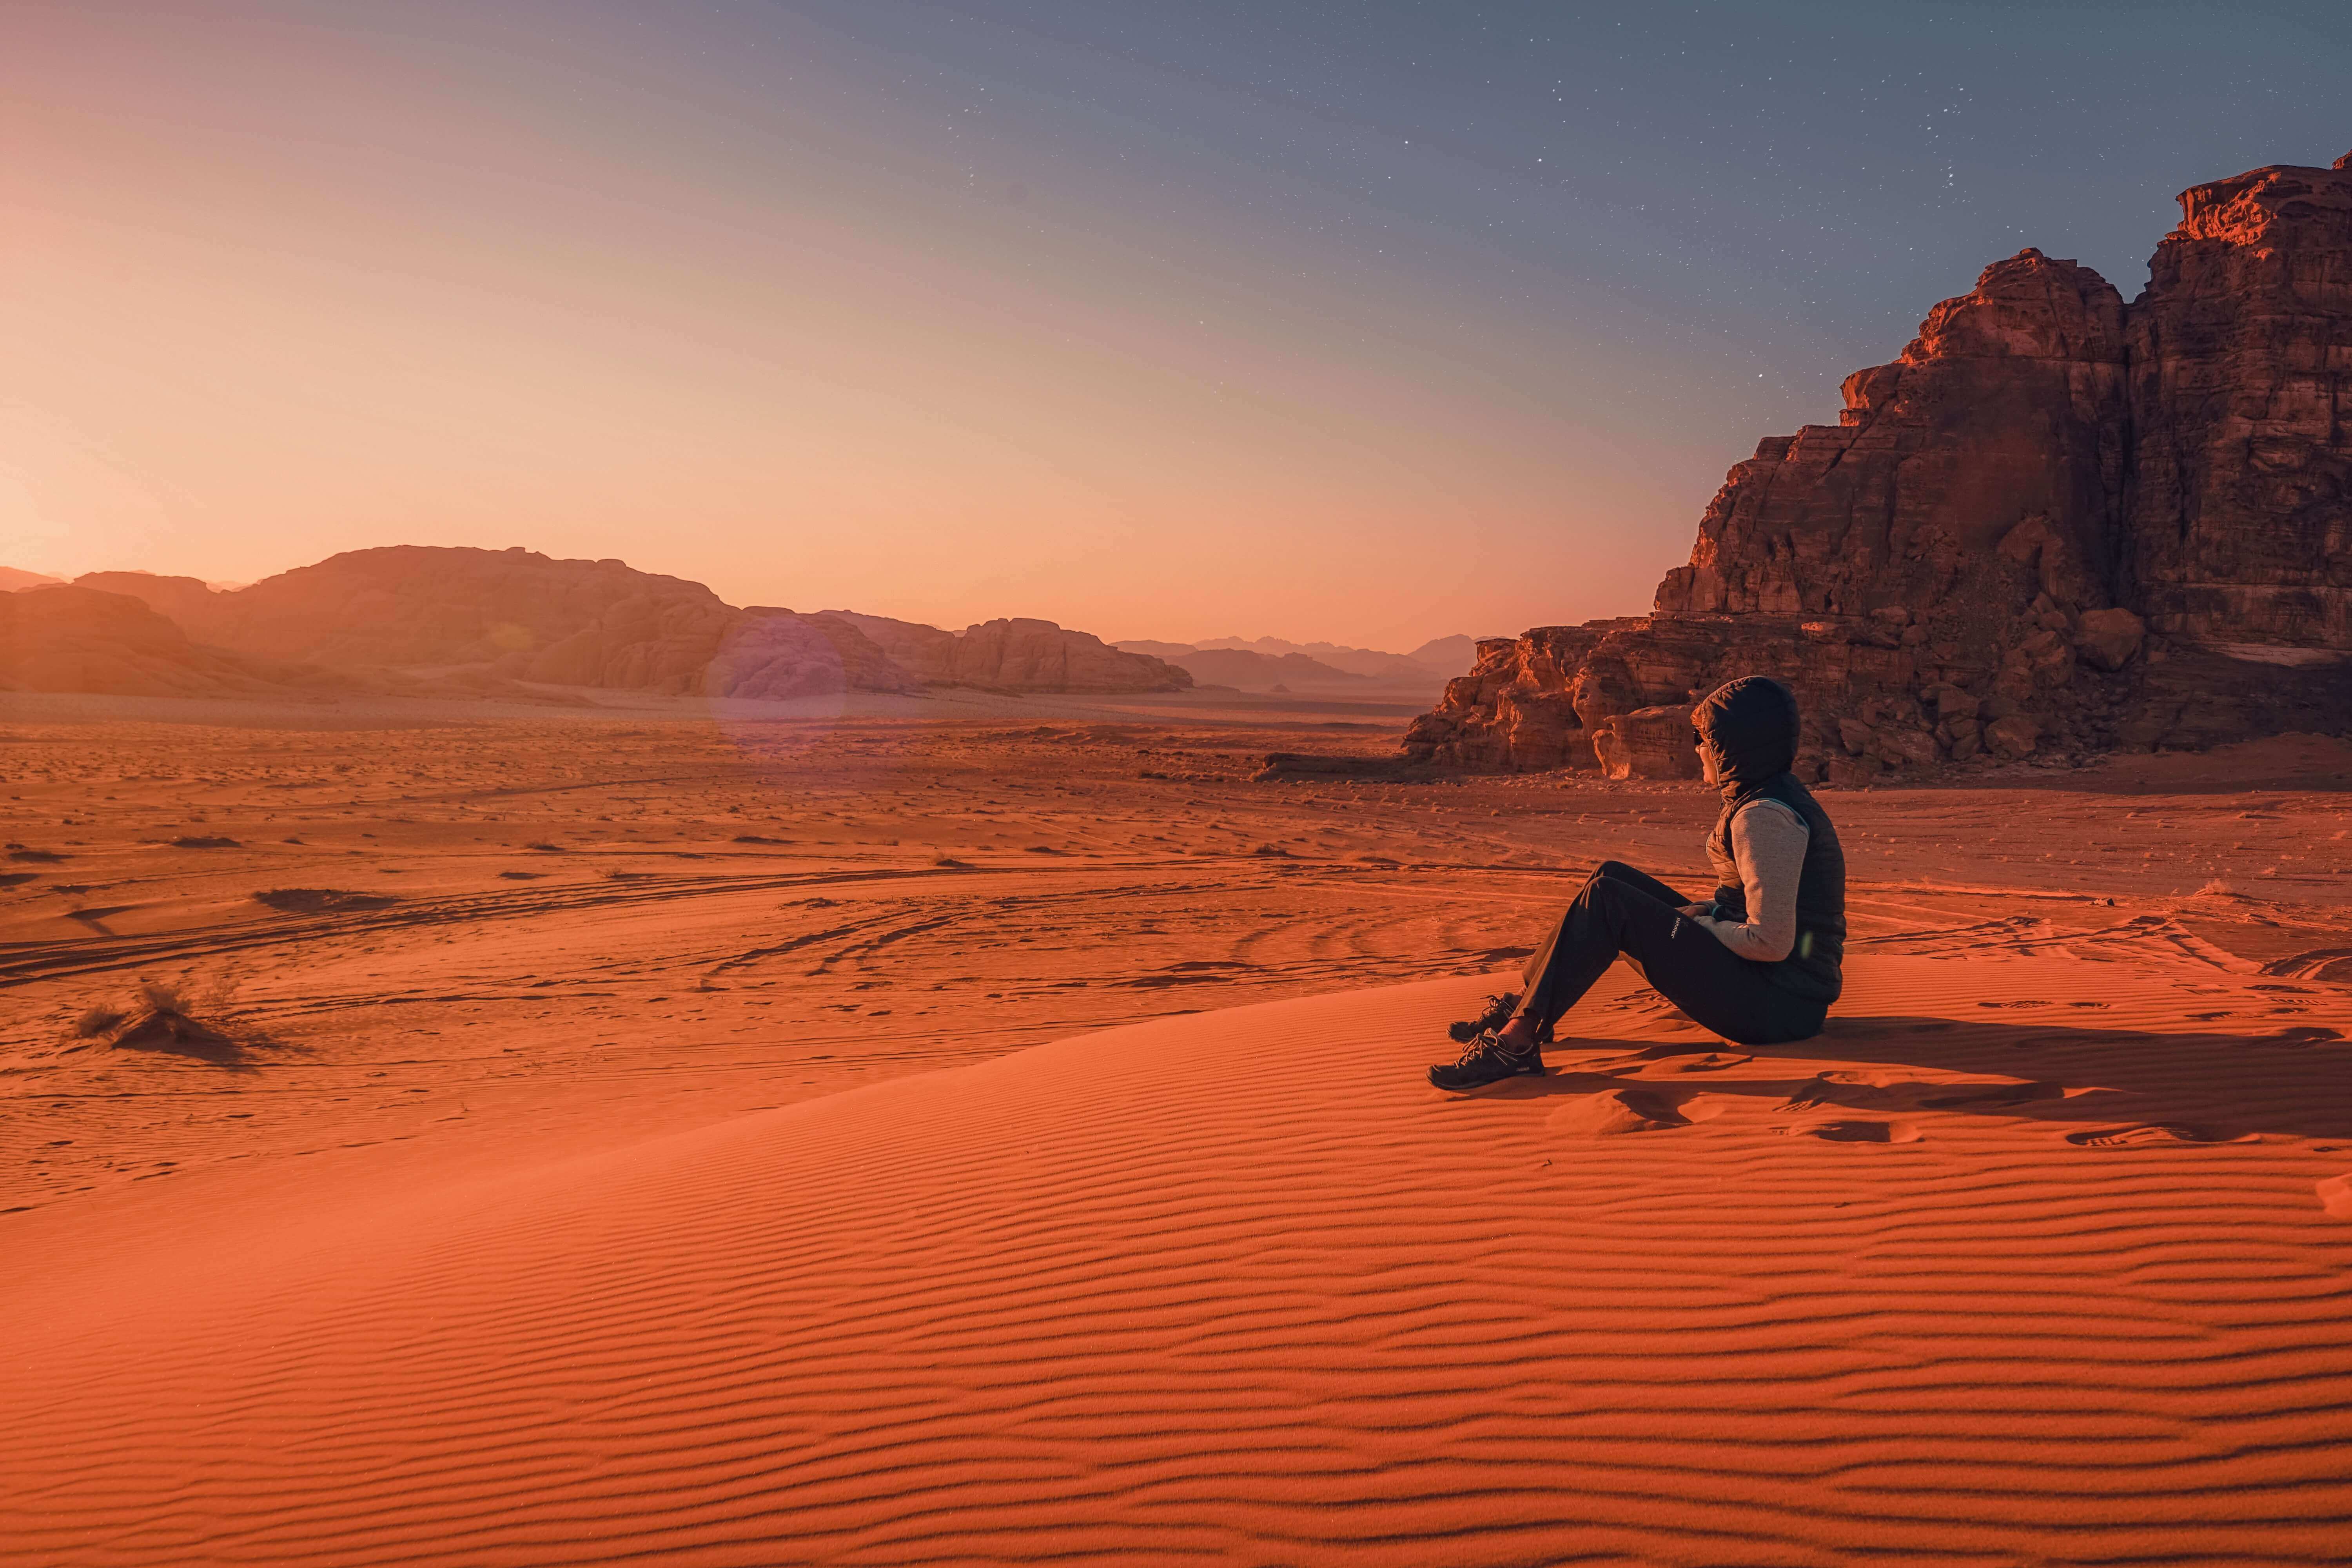 Wadi Rum Camping- The Red Dune of Wadi Rum